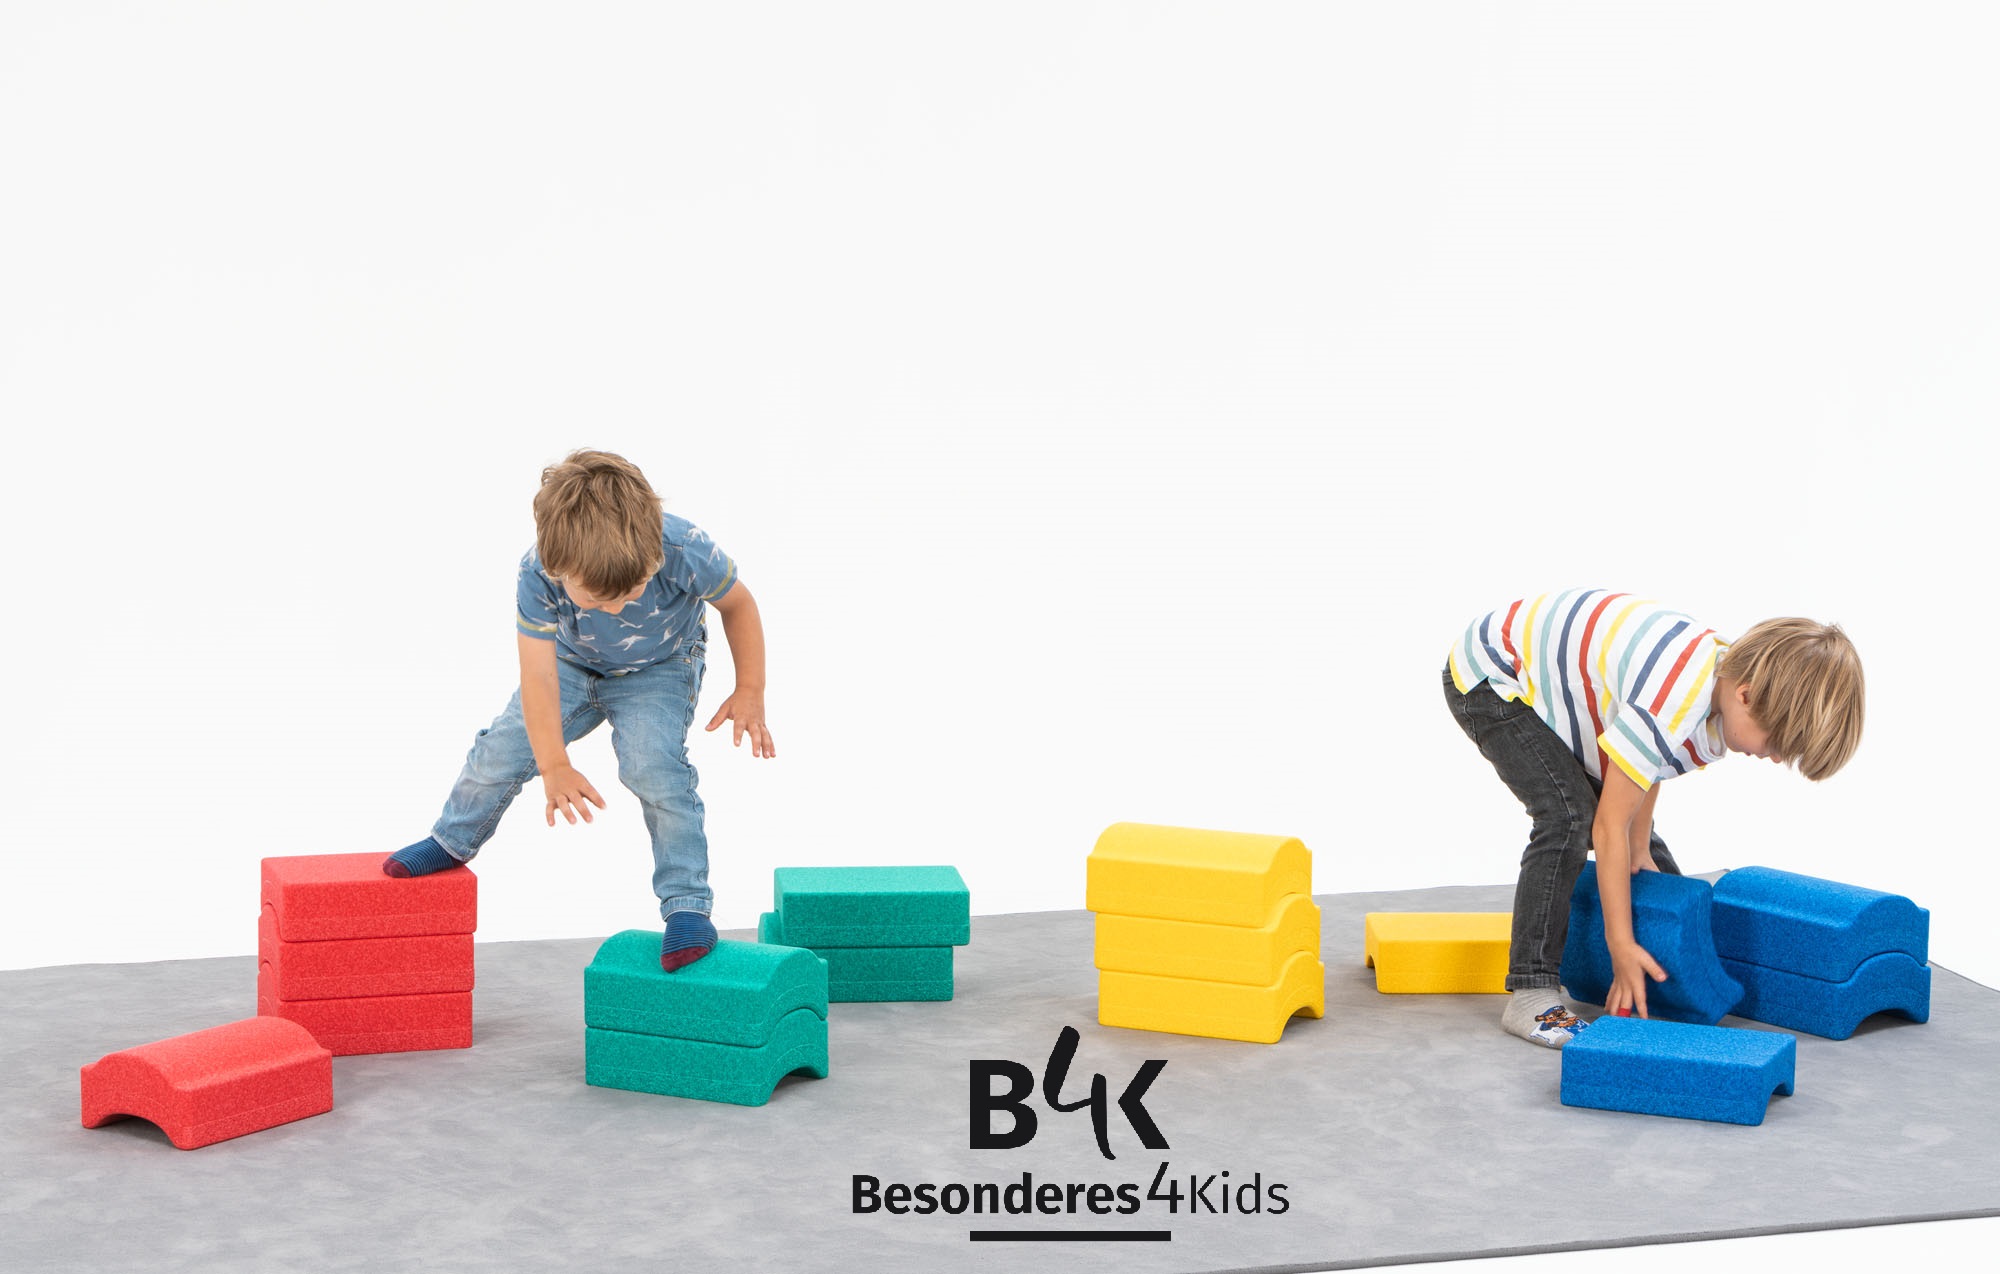 Vier-Farben Spiel Paket  - das B4K Markenprodukt  